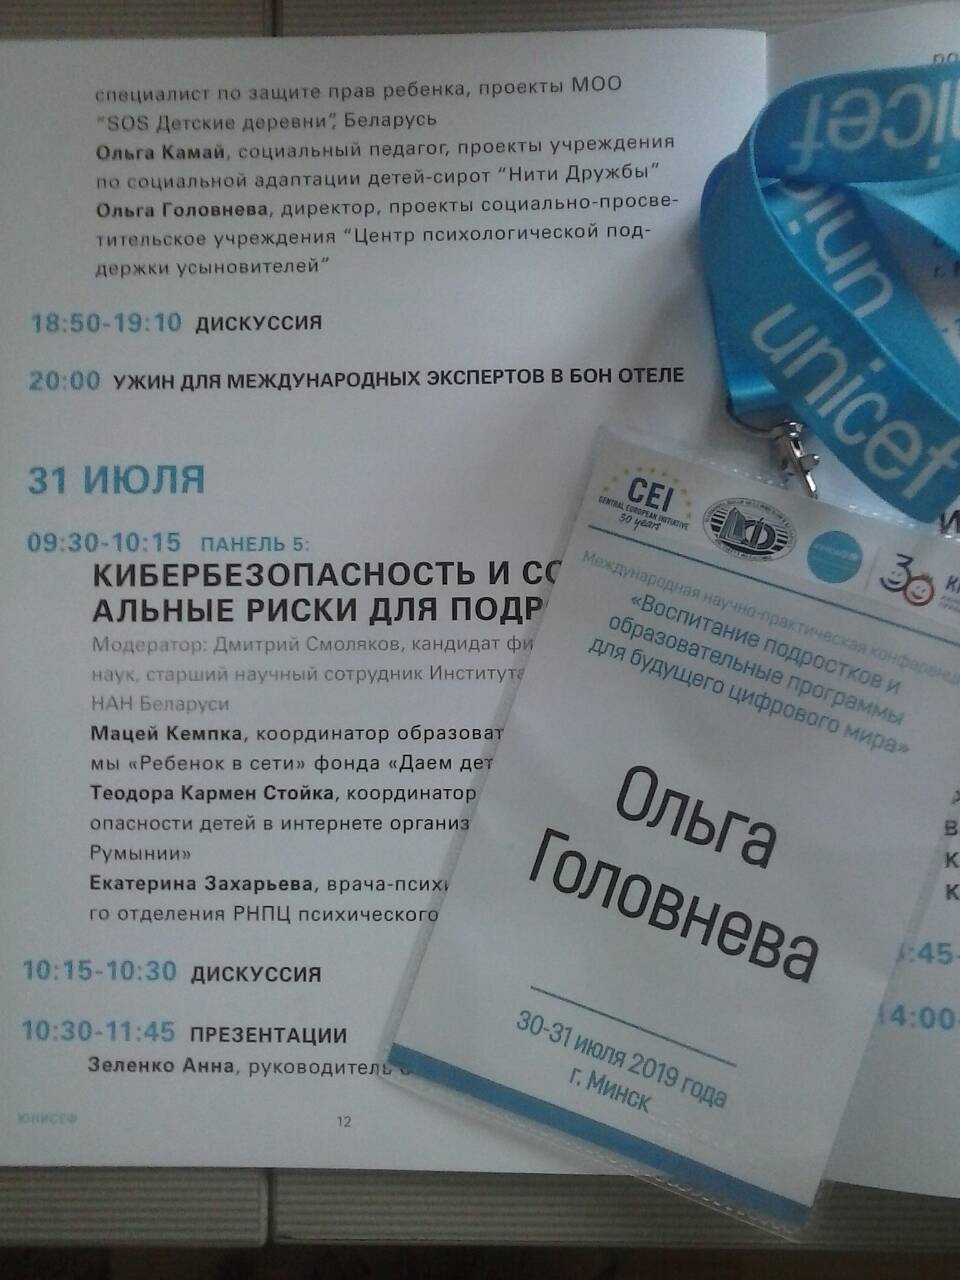 Опыт работы с усыновлёнными подростками - на международной конференции в Минске